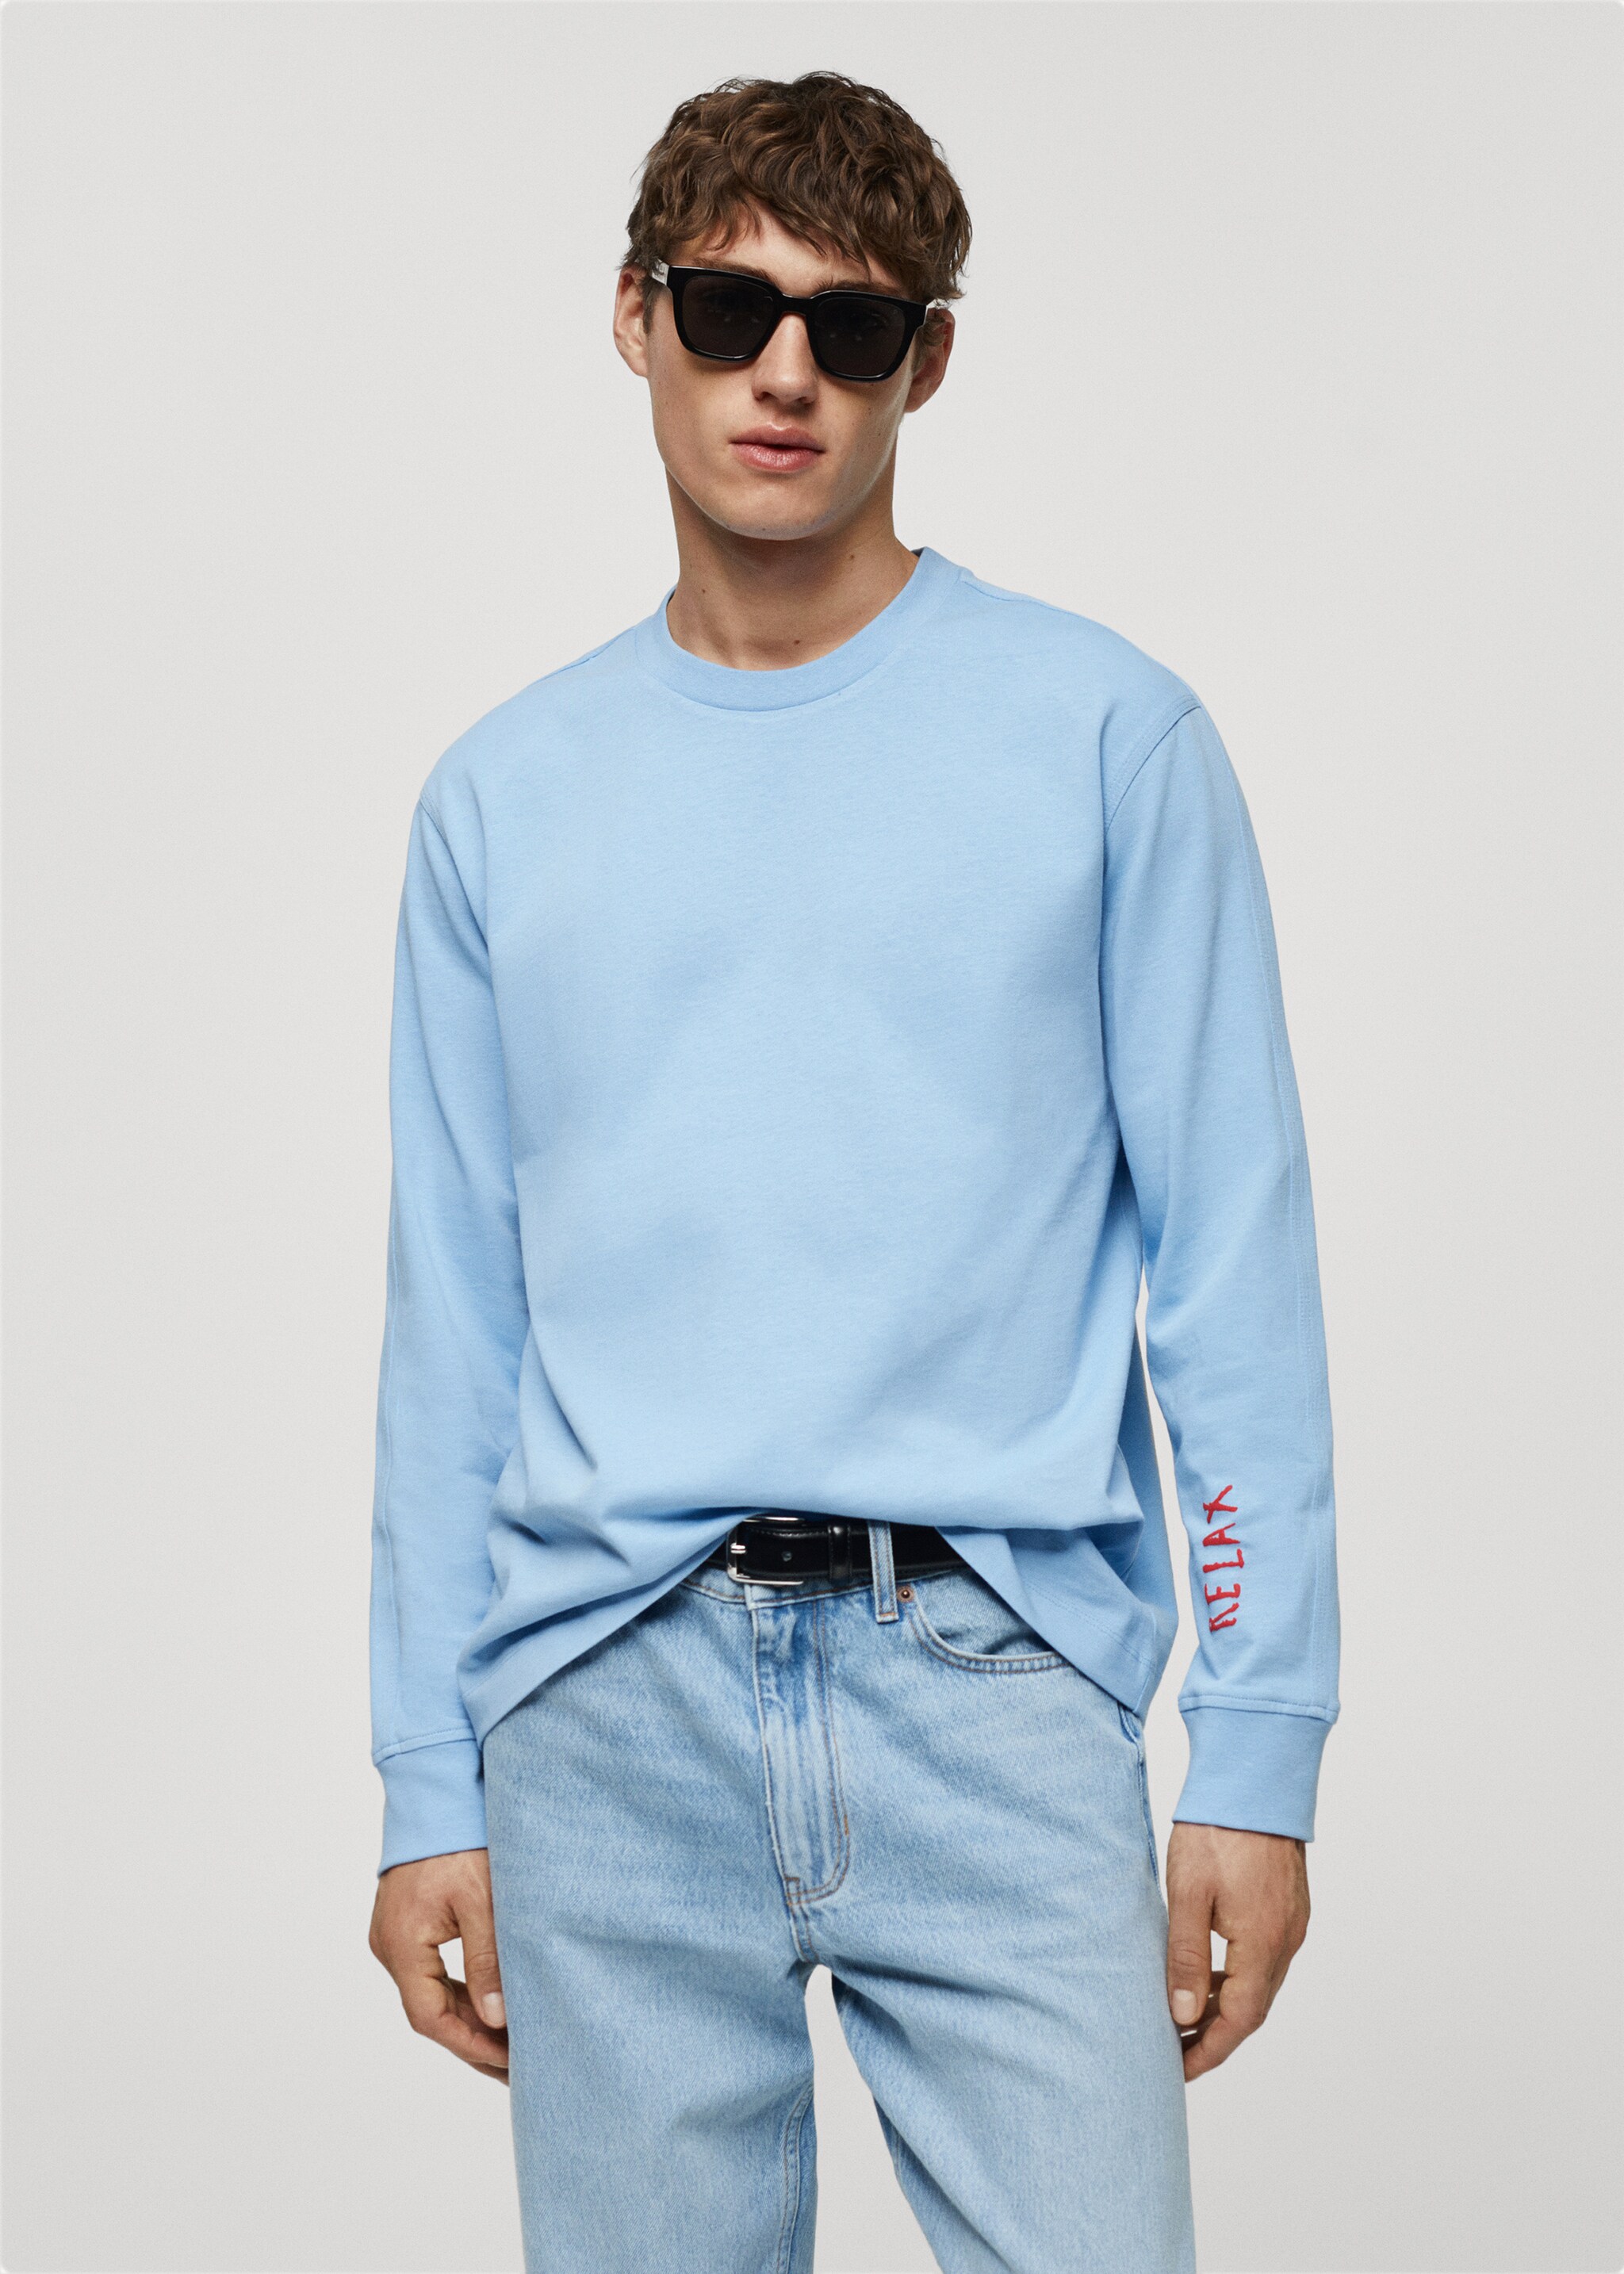 Sweatshirt de 100% algodão com desenho estampado - Plano médio